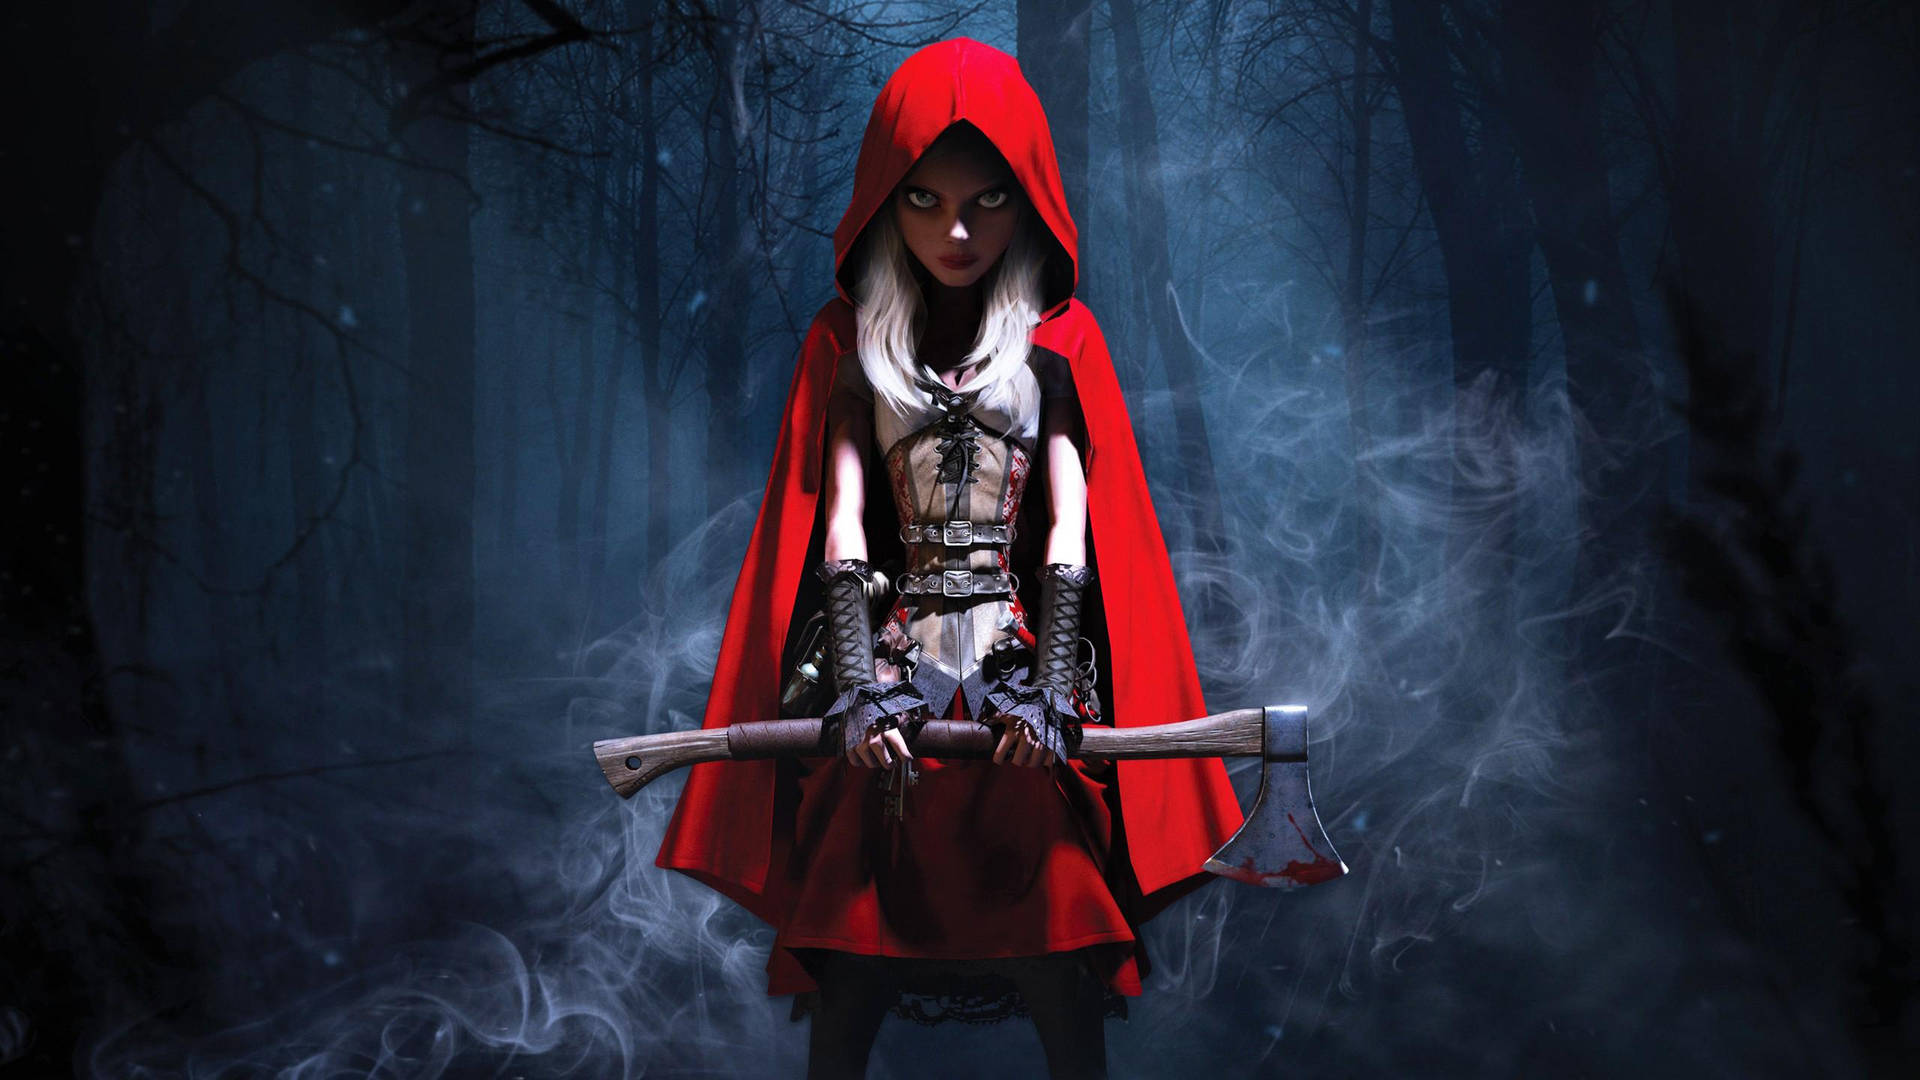 En pige i rød ræv med et sværd i skoven Wallpaper